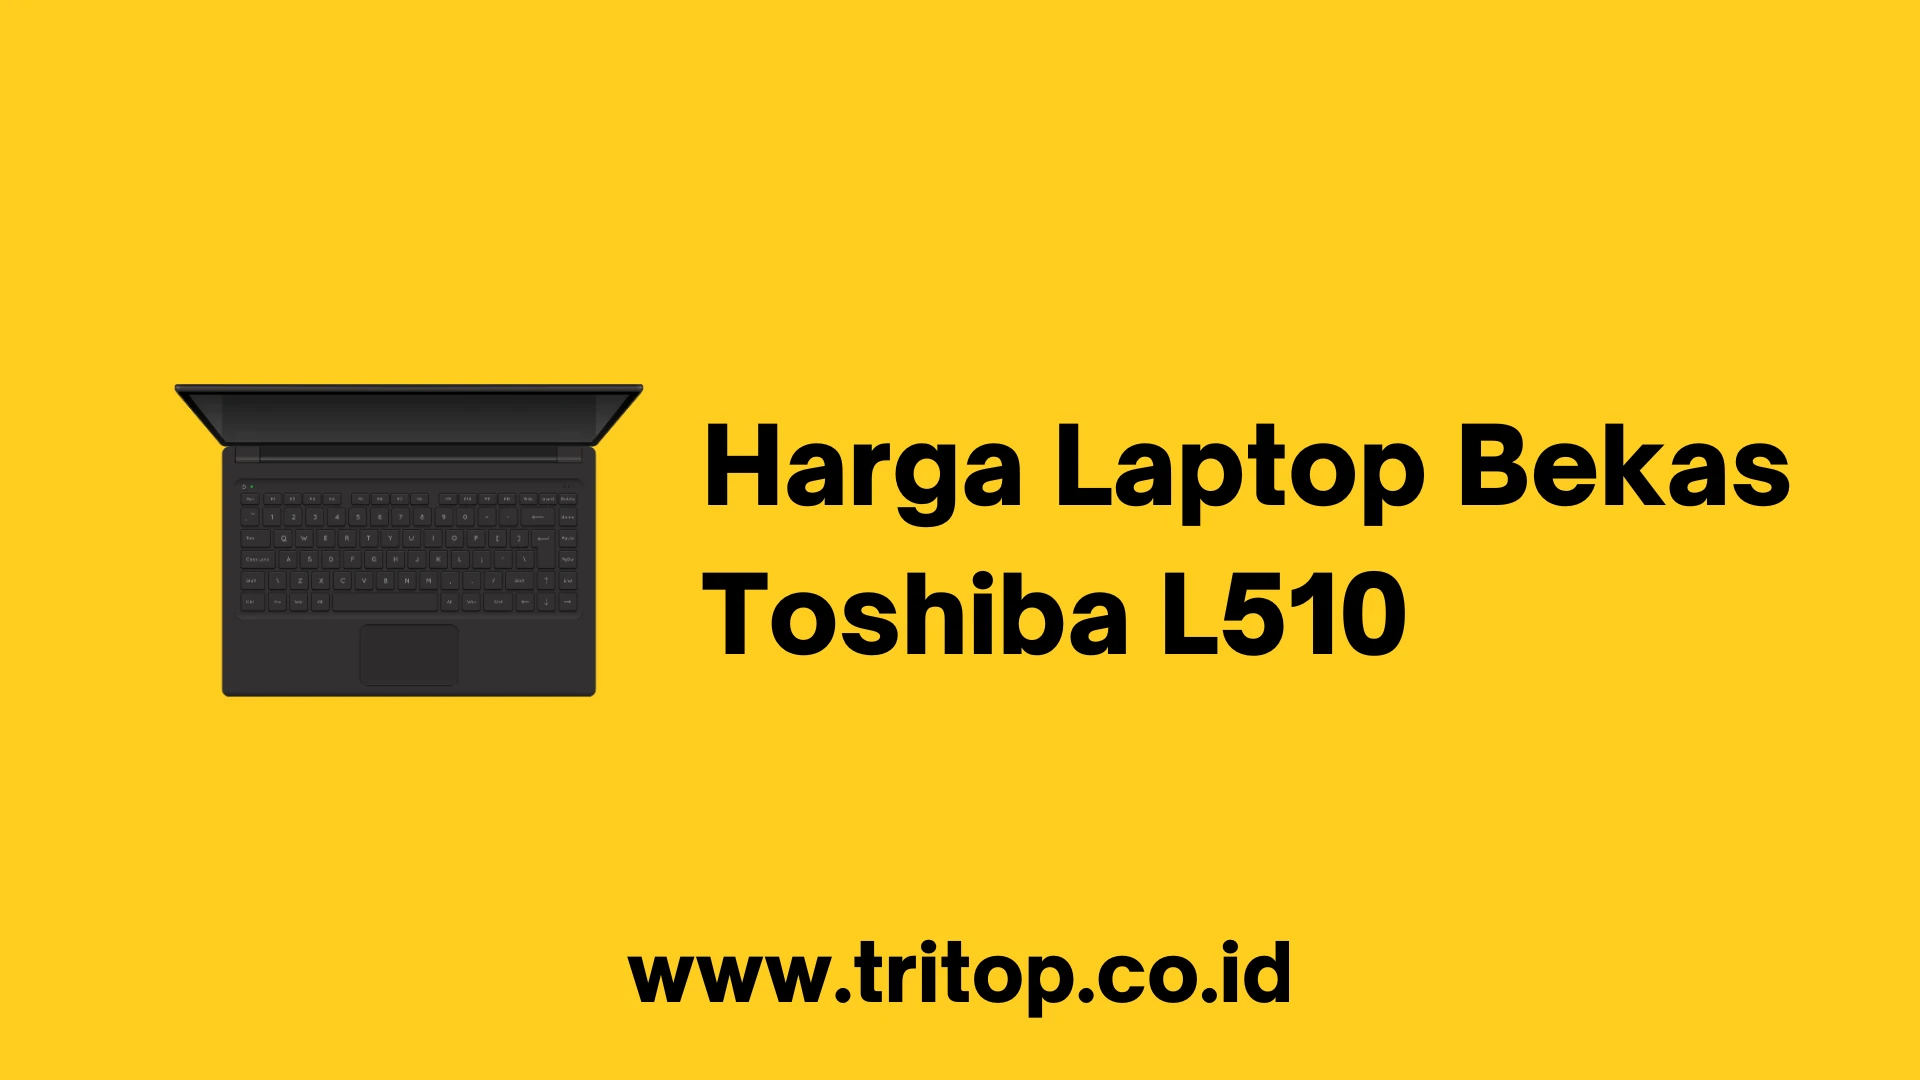 Harga Laptop Bekas Toshiba L510